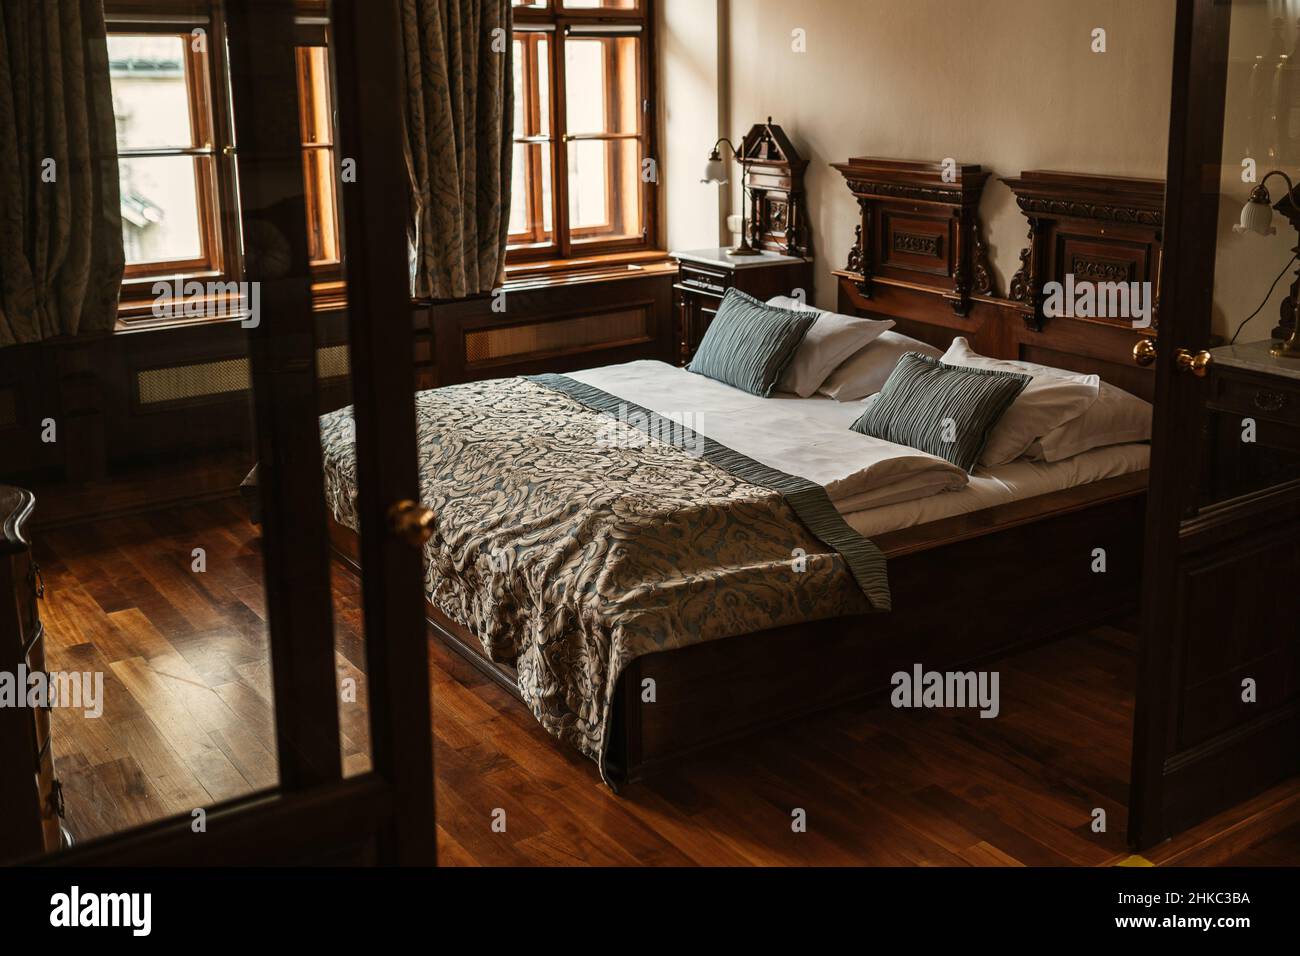 Elegante habitación medieval de lujo europeo con suelo de madera y cama con almohadas verdes, sábanas, colcha y lámpara de habitación en el fondo. Foto de stock